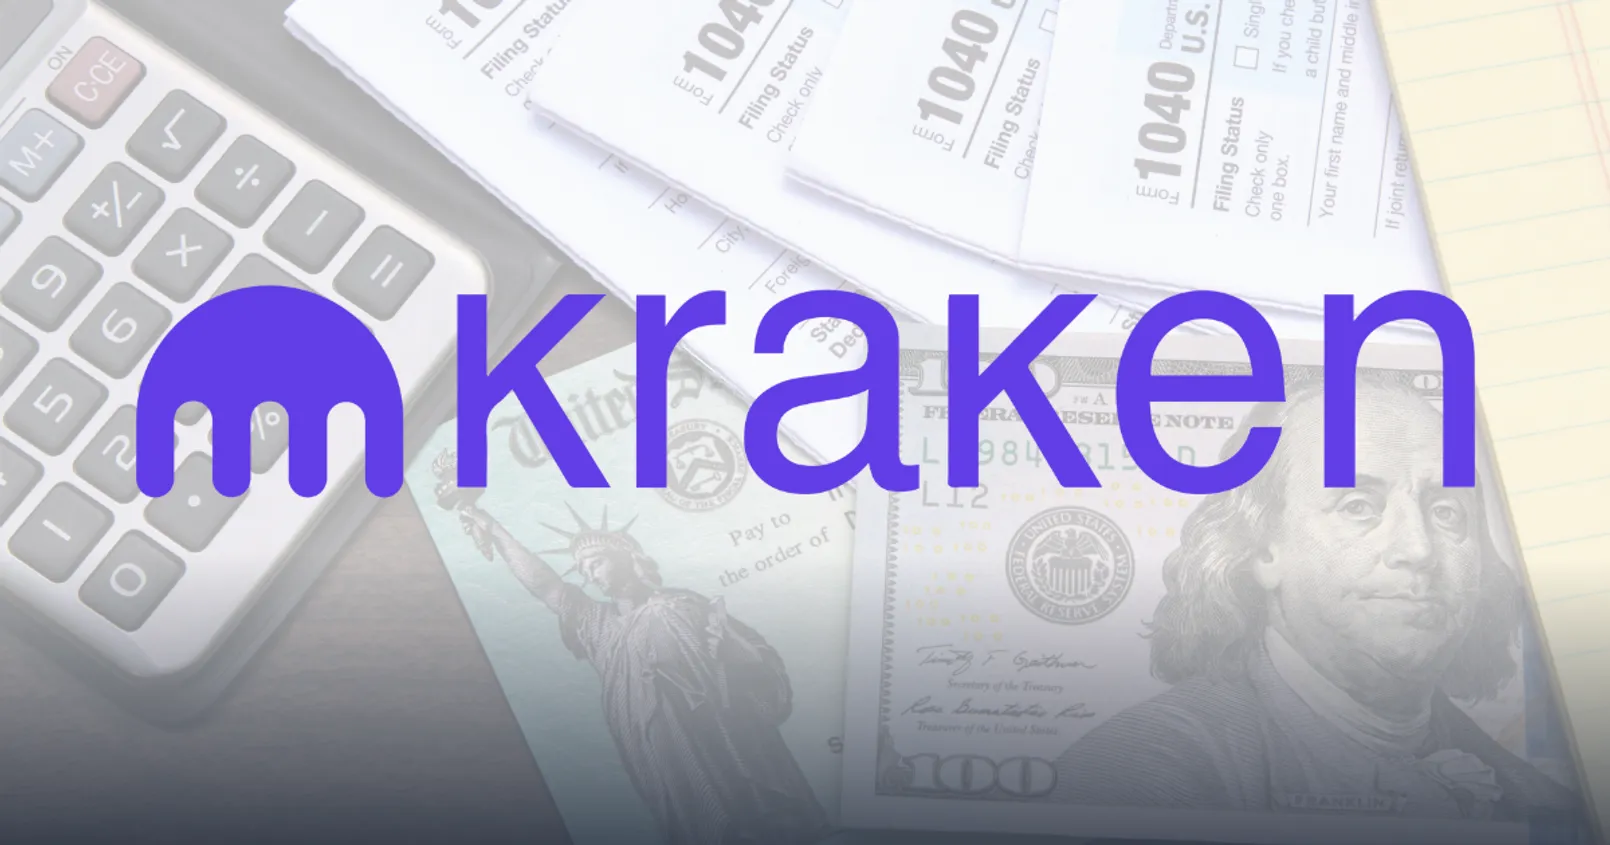 ศาลออกคำสั่ง 'Kraken' เว็บเทรดดังสหรัฐฯ ส่งชื่อข้อมูลผู้ใช้ให้สรรพากร หวังแก้ปัญหาหนีภาษีคริปโต